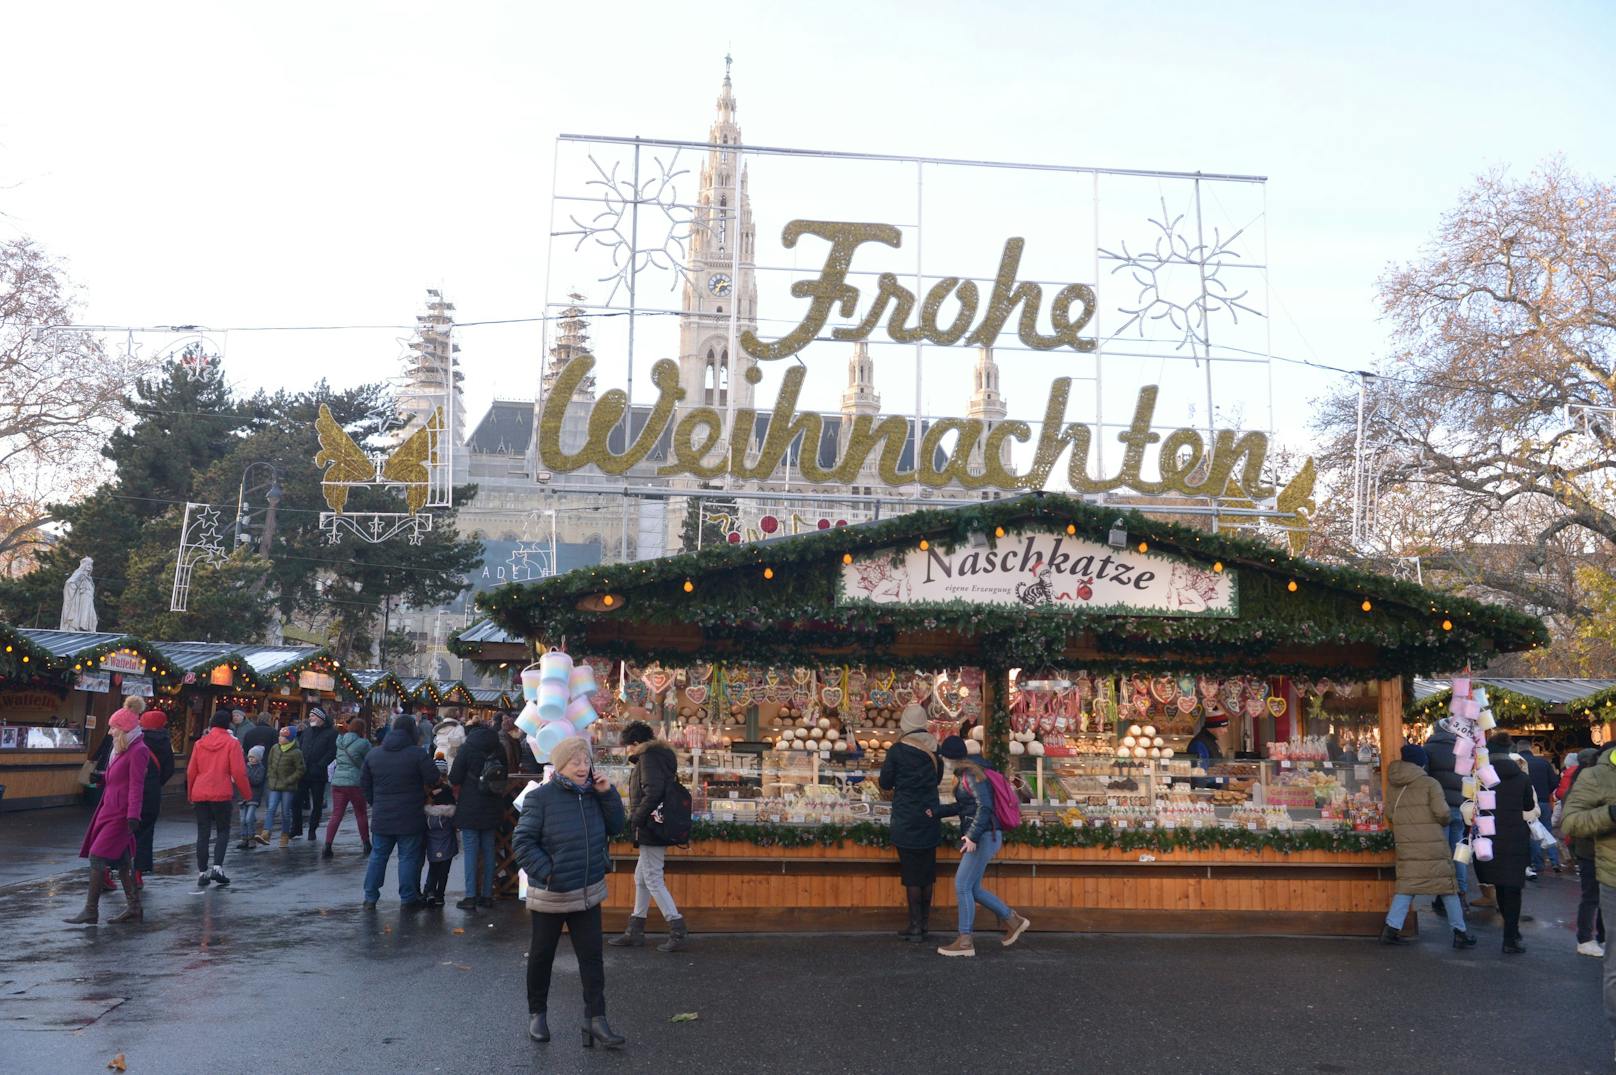 Wien stellt Standvergabe am Christkindlmarkt neu auf